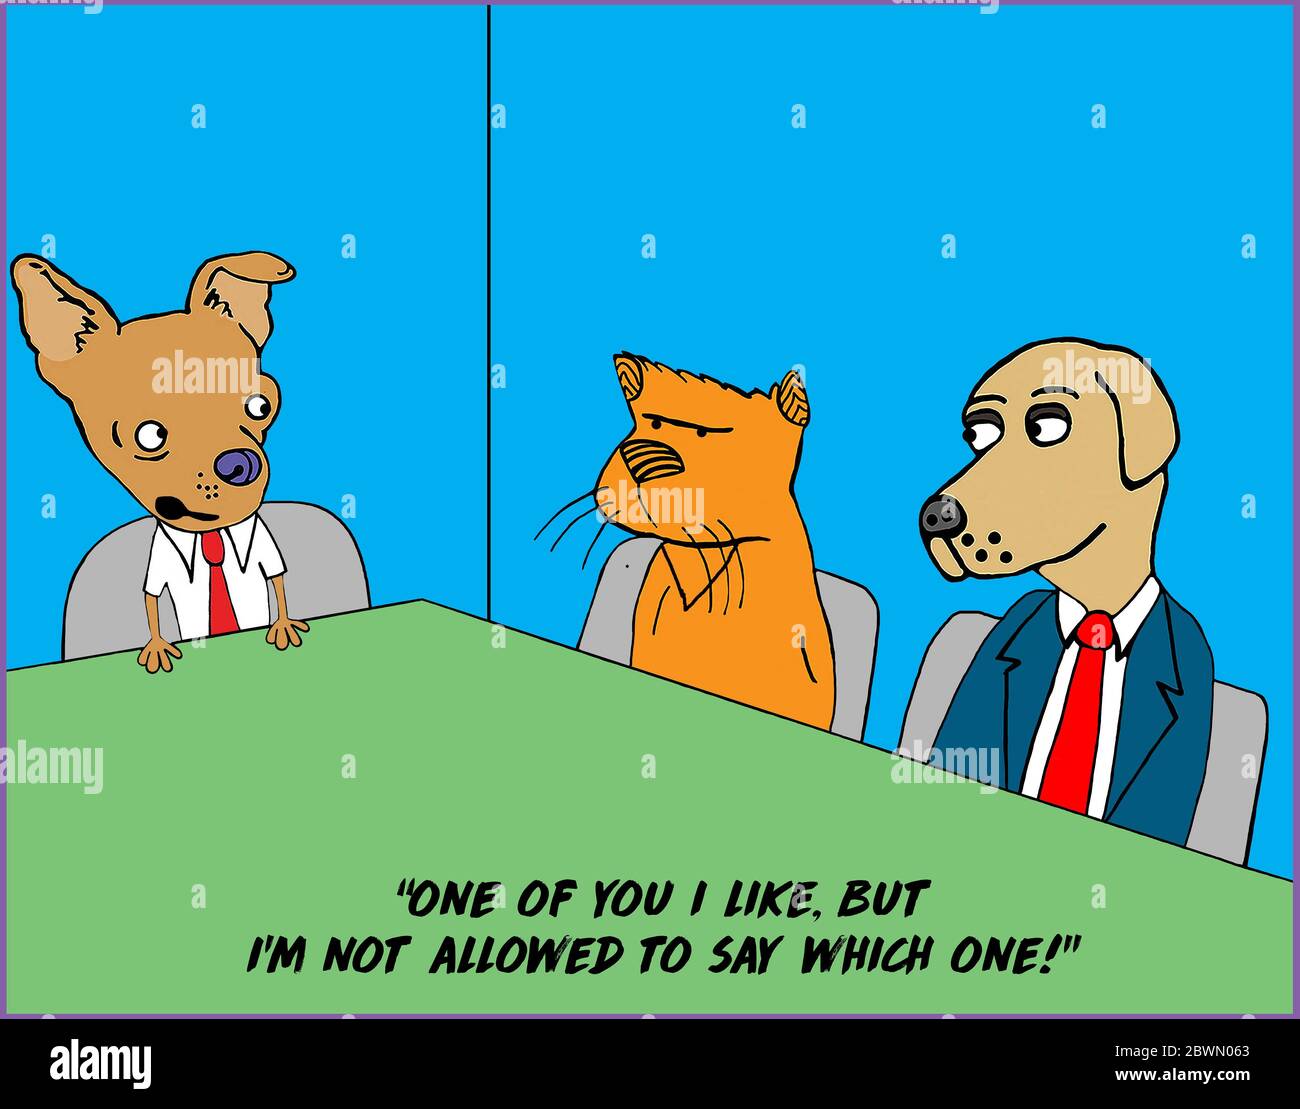 Farb-Cartoon von zwei Hunden und einer Katze an einem Arbeitstisch, wo ein Hund sagt, er mag einen von ihnen, darf aber nicht sagen, welchen. Stockfoto